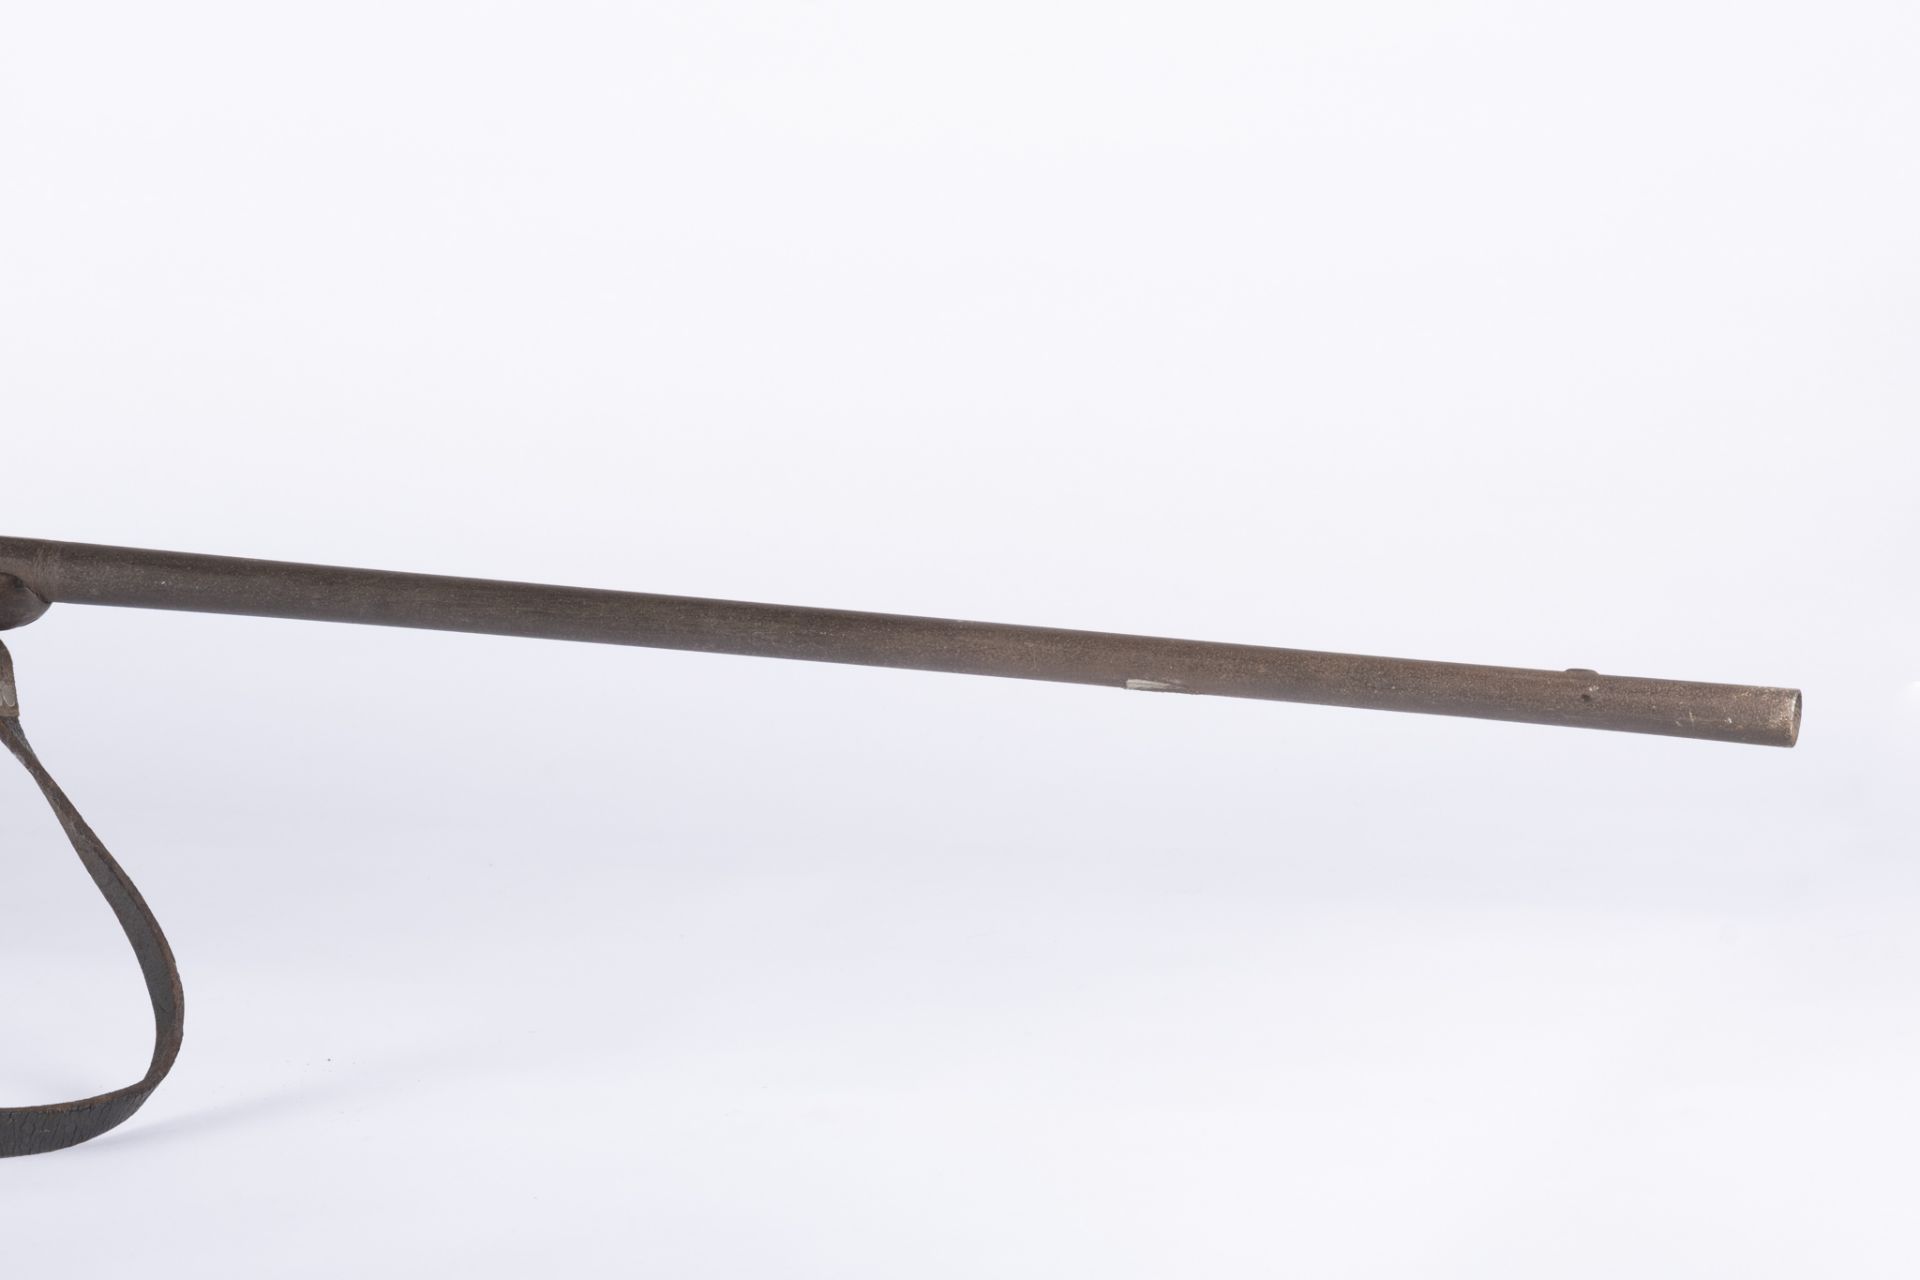 Belgique, XIXème siècle: Fusil à silex modifié pour la chasse. Fusil à silex de chasse issus du - Bild 2 aus 2